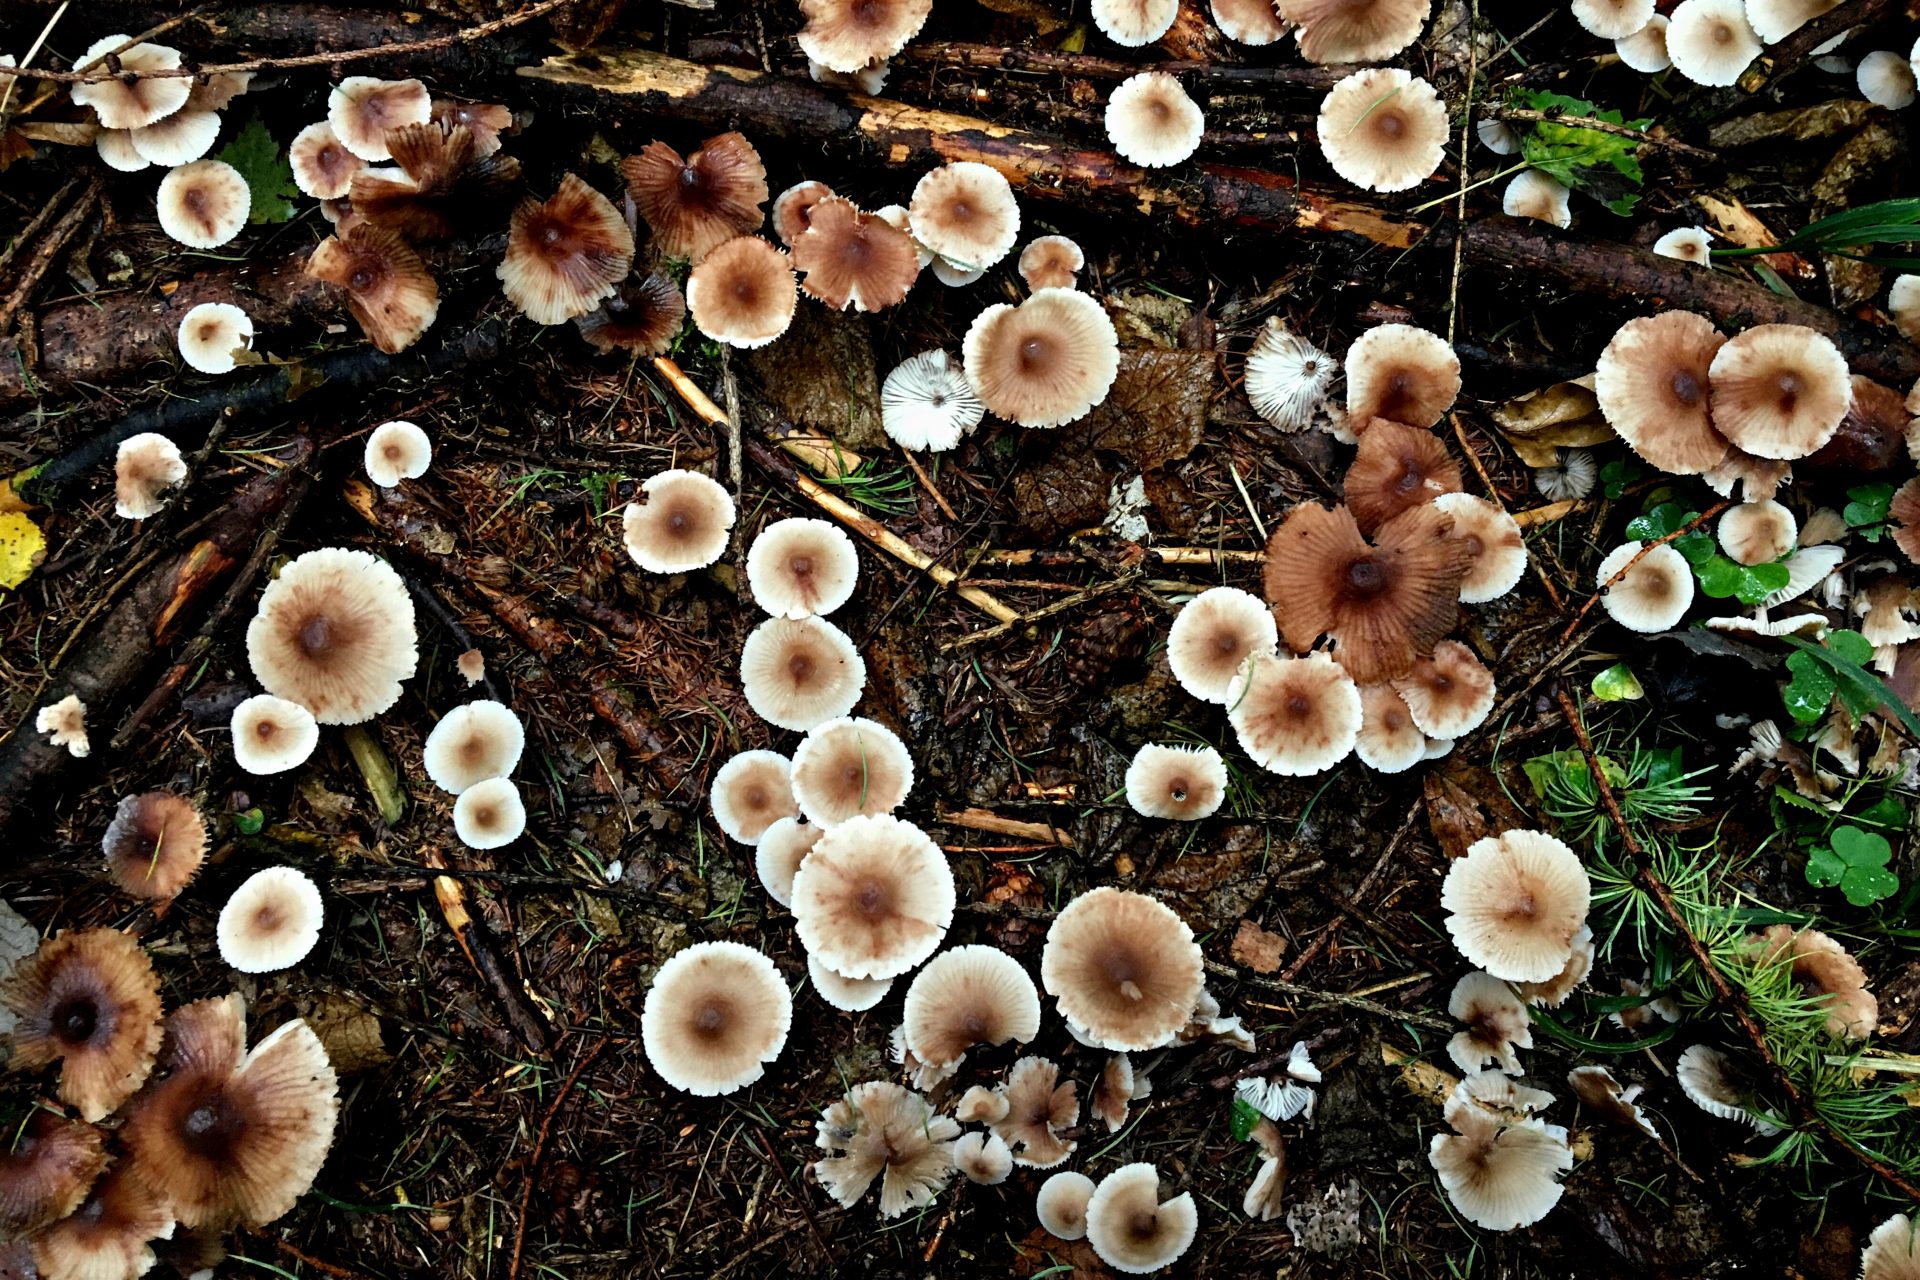 Mushrooms in an autumn forest, Pilze im Herbstwald